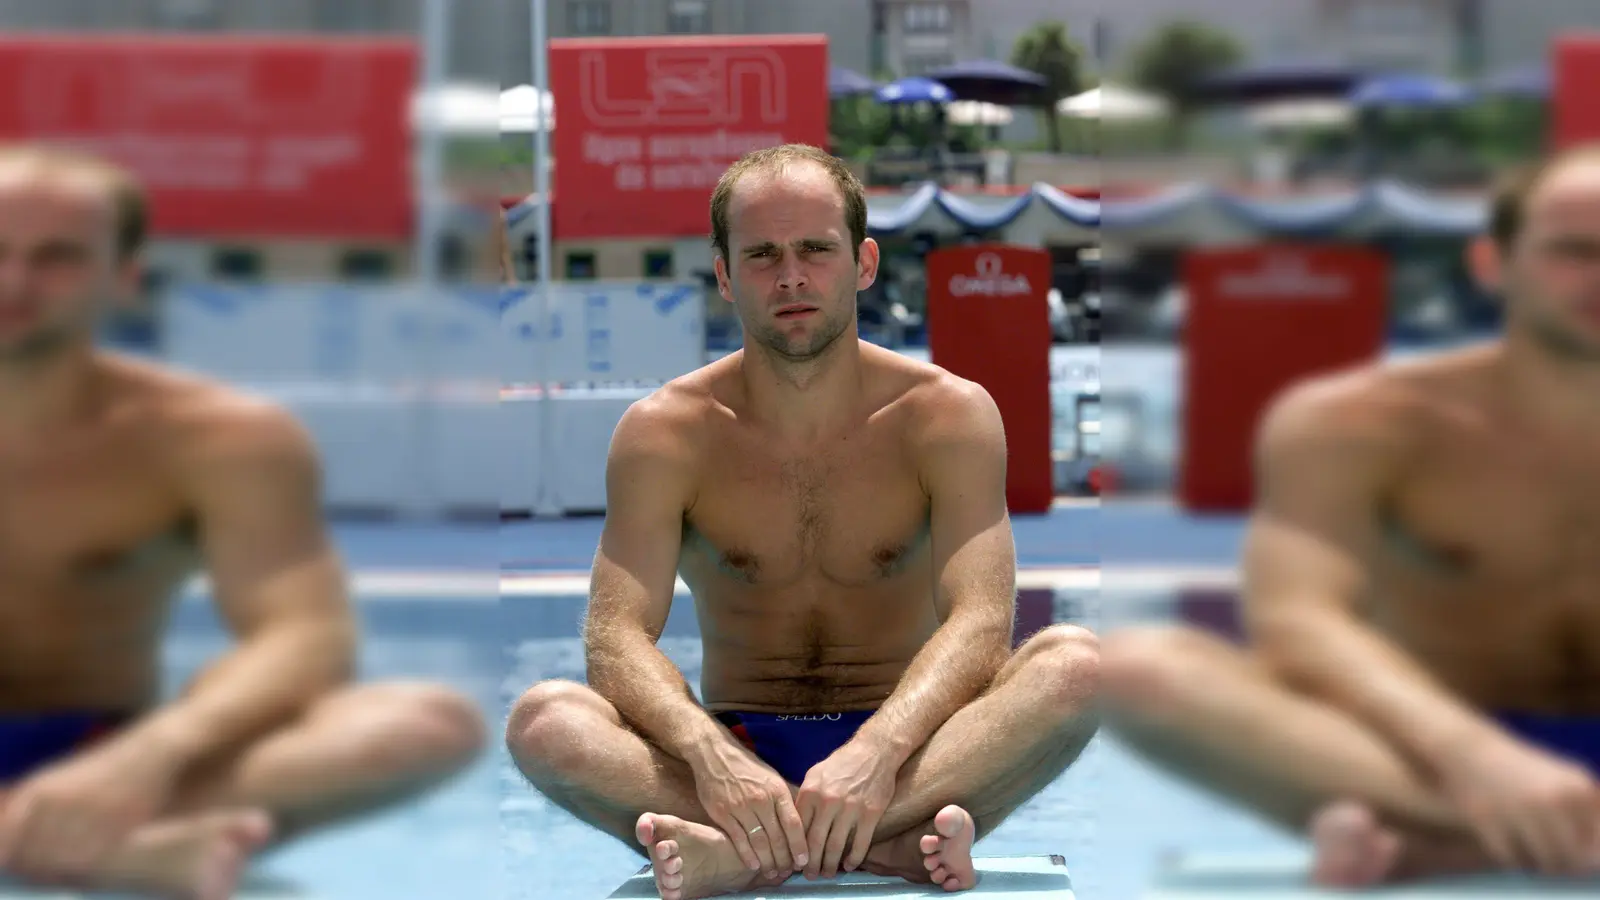 Der ehemalige Weltklasse-Wasserspringer Jan Hempel ist nach eigener Aussage jahrelang von seinem damaligen Trainer sexuell missbraucht worden. (Foto: Stefan Hesse/dpa)